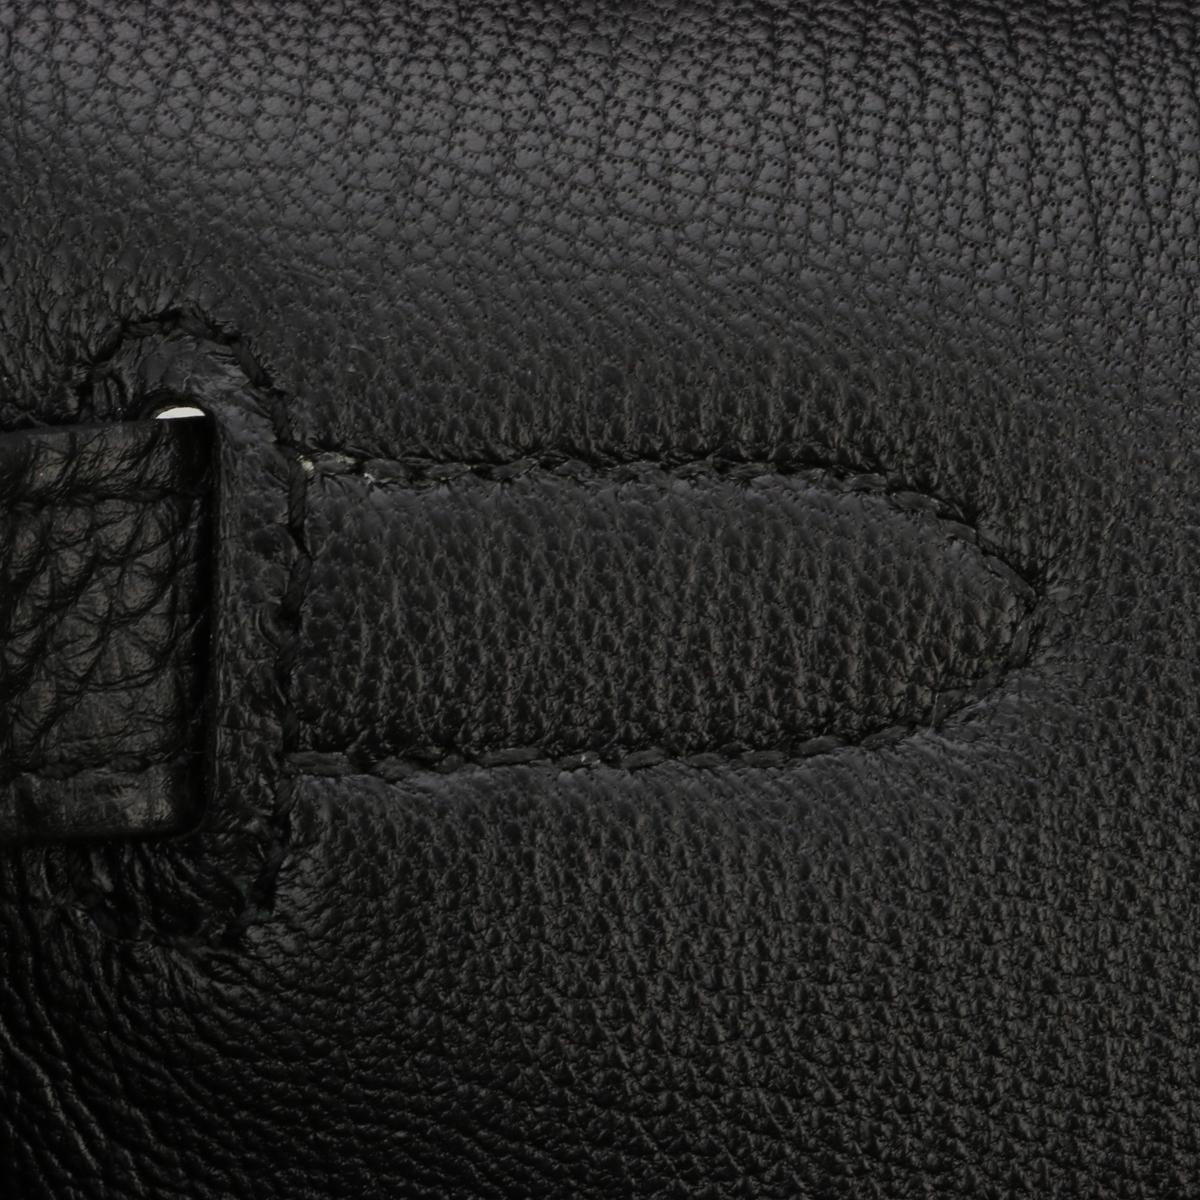 Hermès Birkin Bag 40cm Black Togo Leather with Gold Hardware Stamp N 2010 14